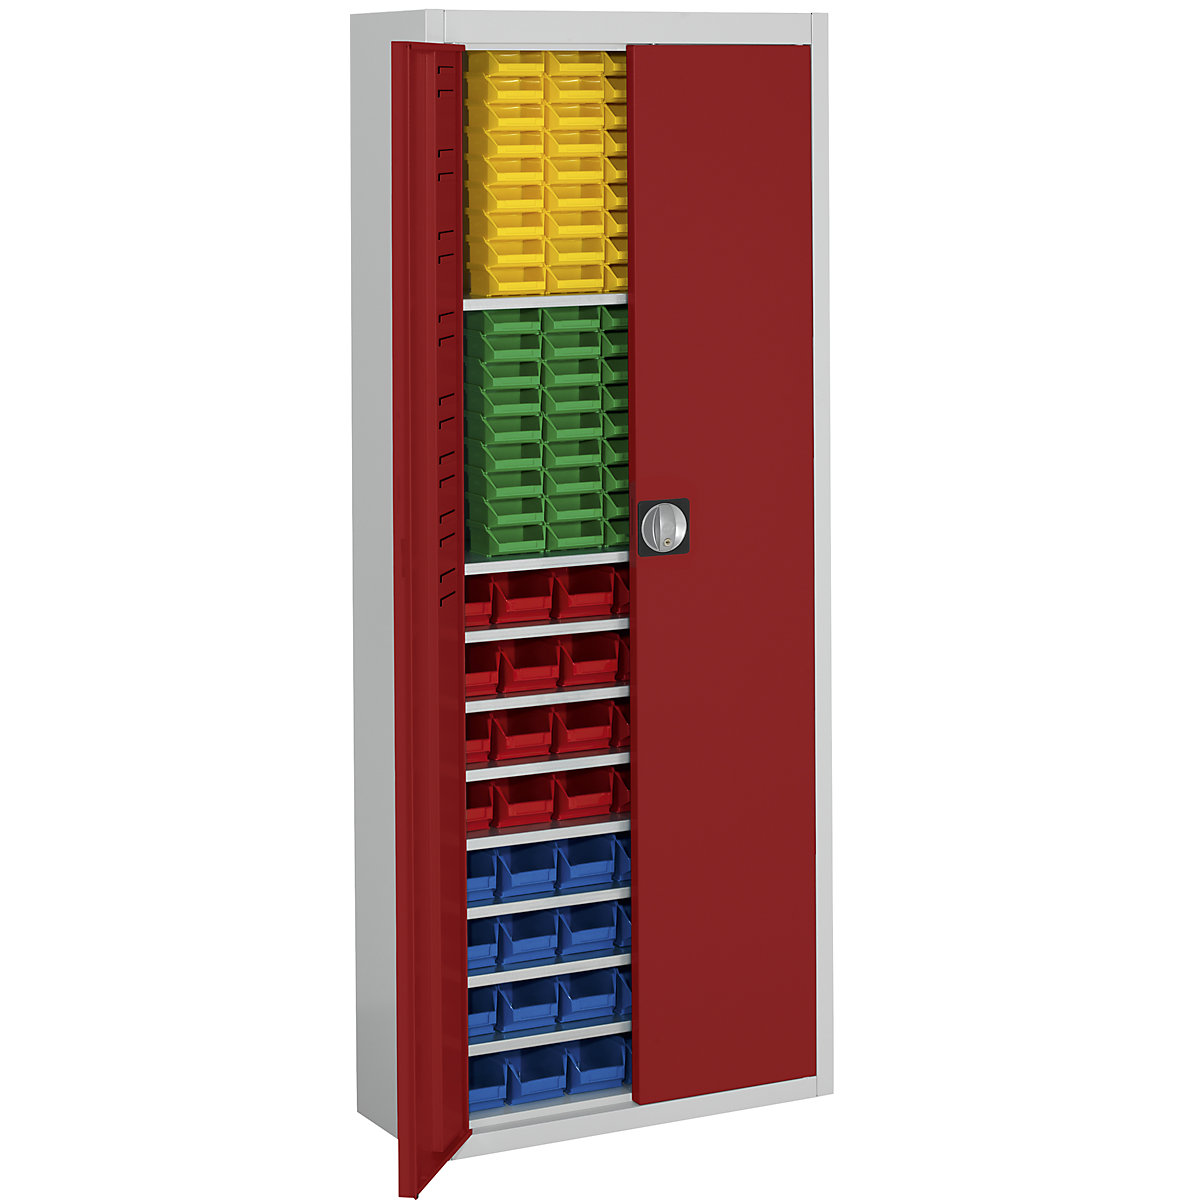 Armadio magazzino con cassette – mauser, alt. x largh. x prof. 1740 x 680 x 280 mm, in due colori, corpo grigio, ante rosse, 138 cassettine-1